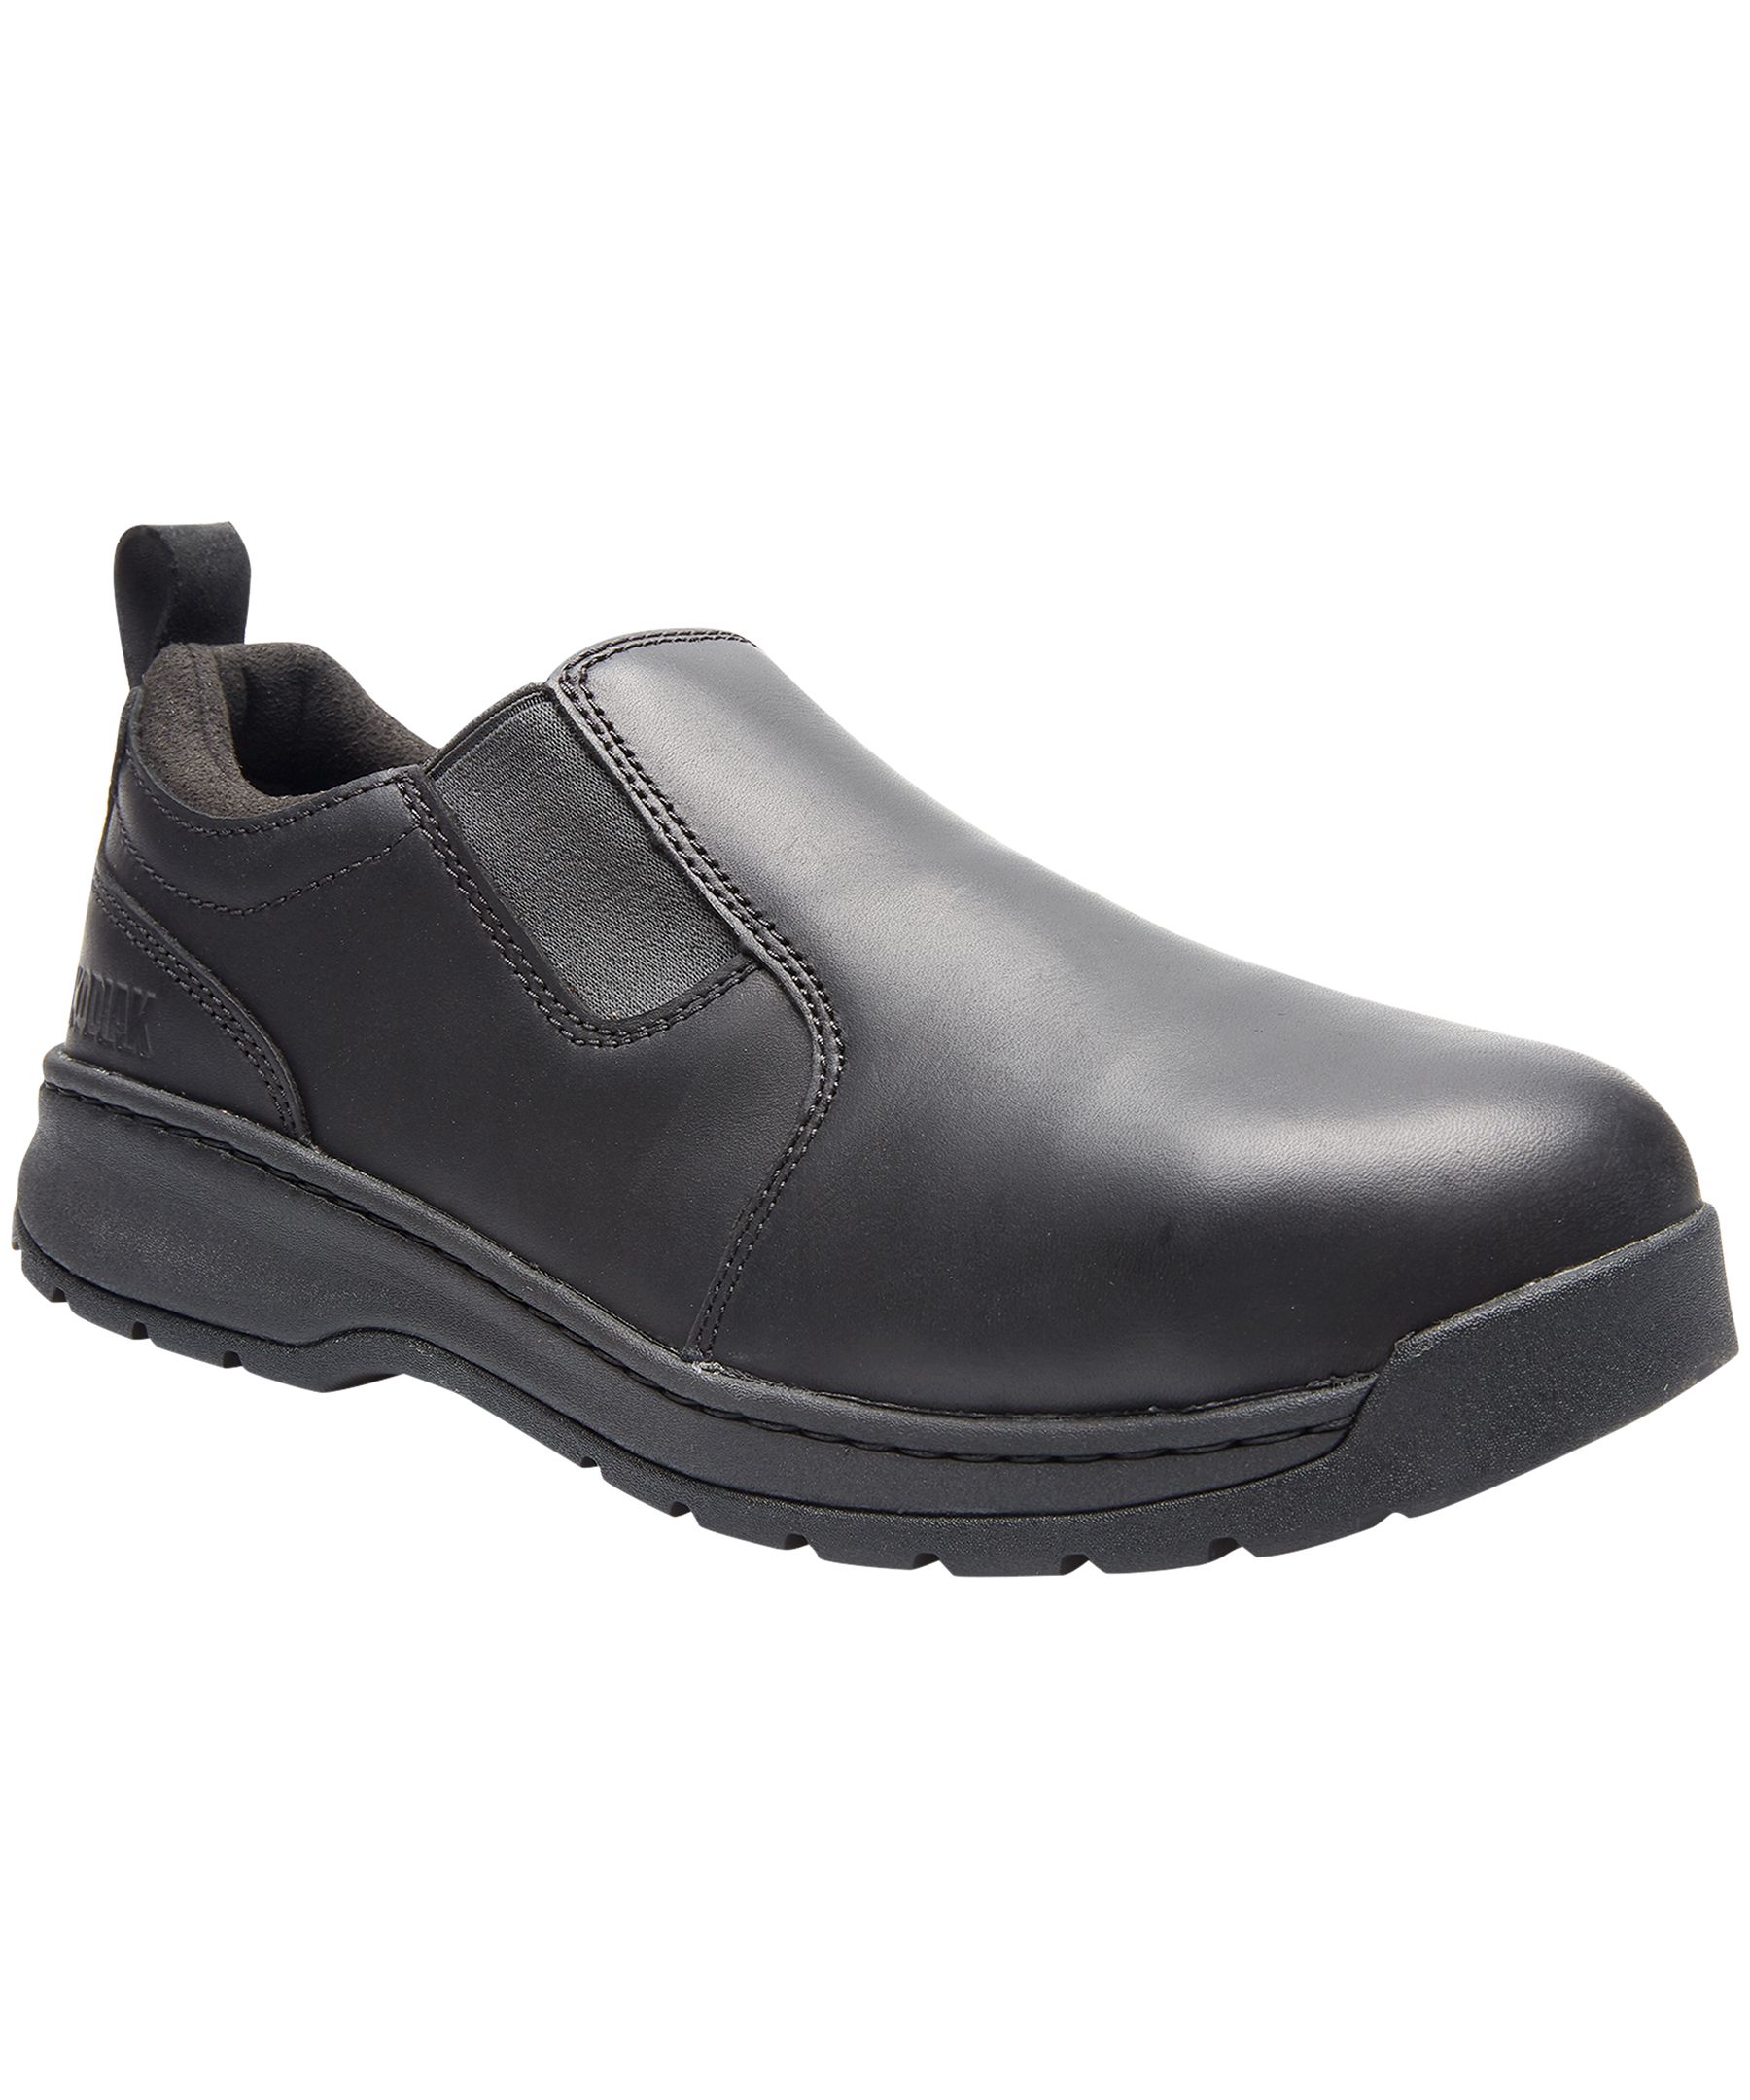 Kodiak Men's Rossburn Aluminum Toe Composite Plate Slip-On Oxford Shoes ...